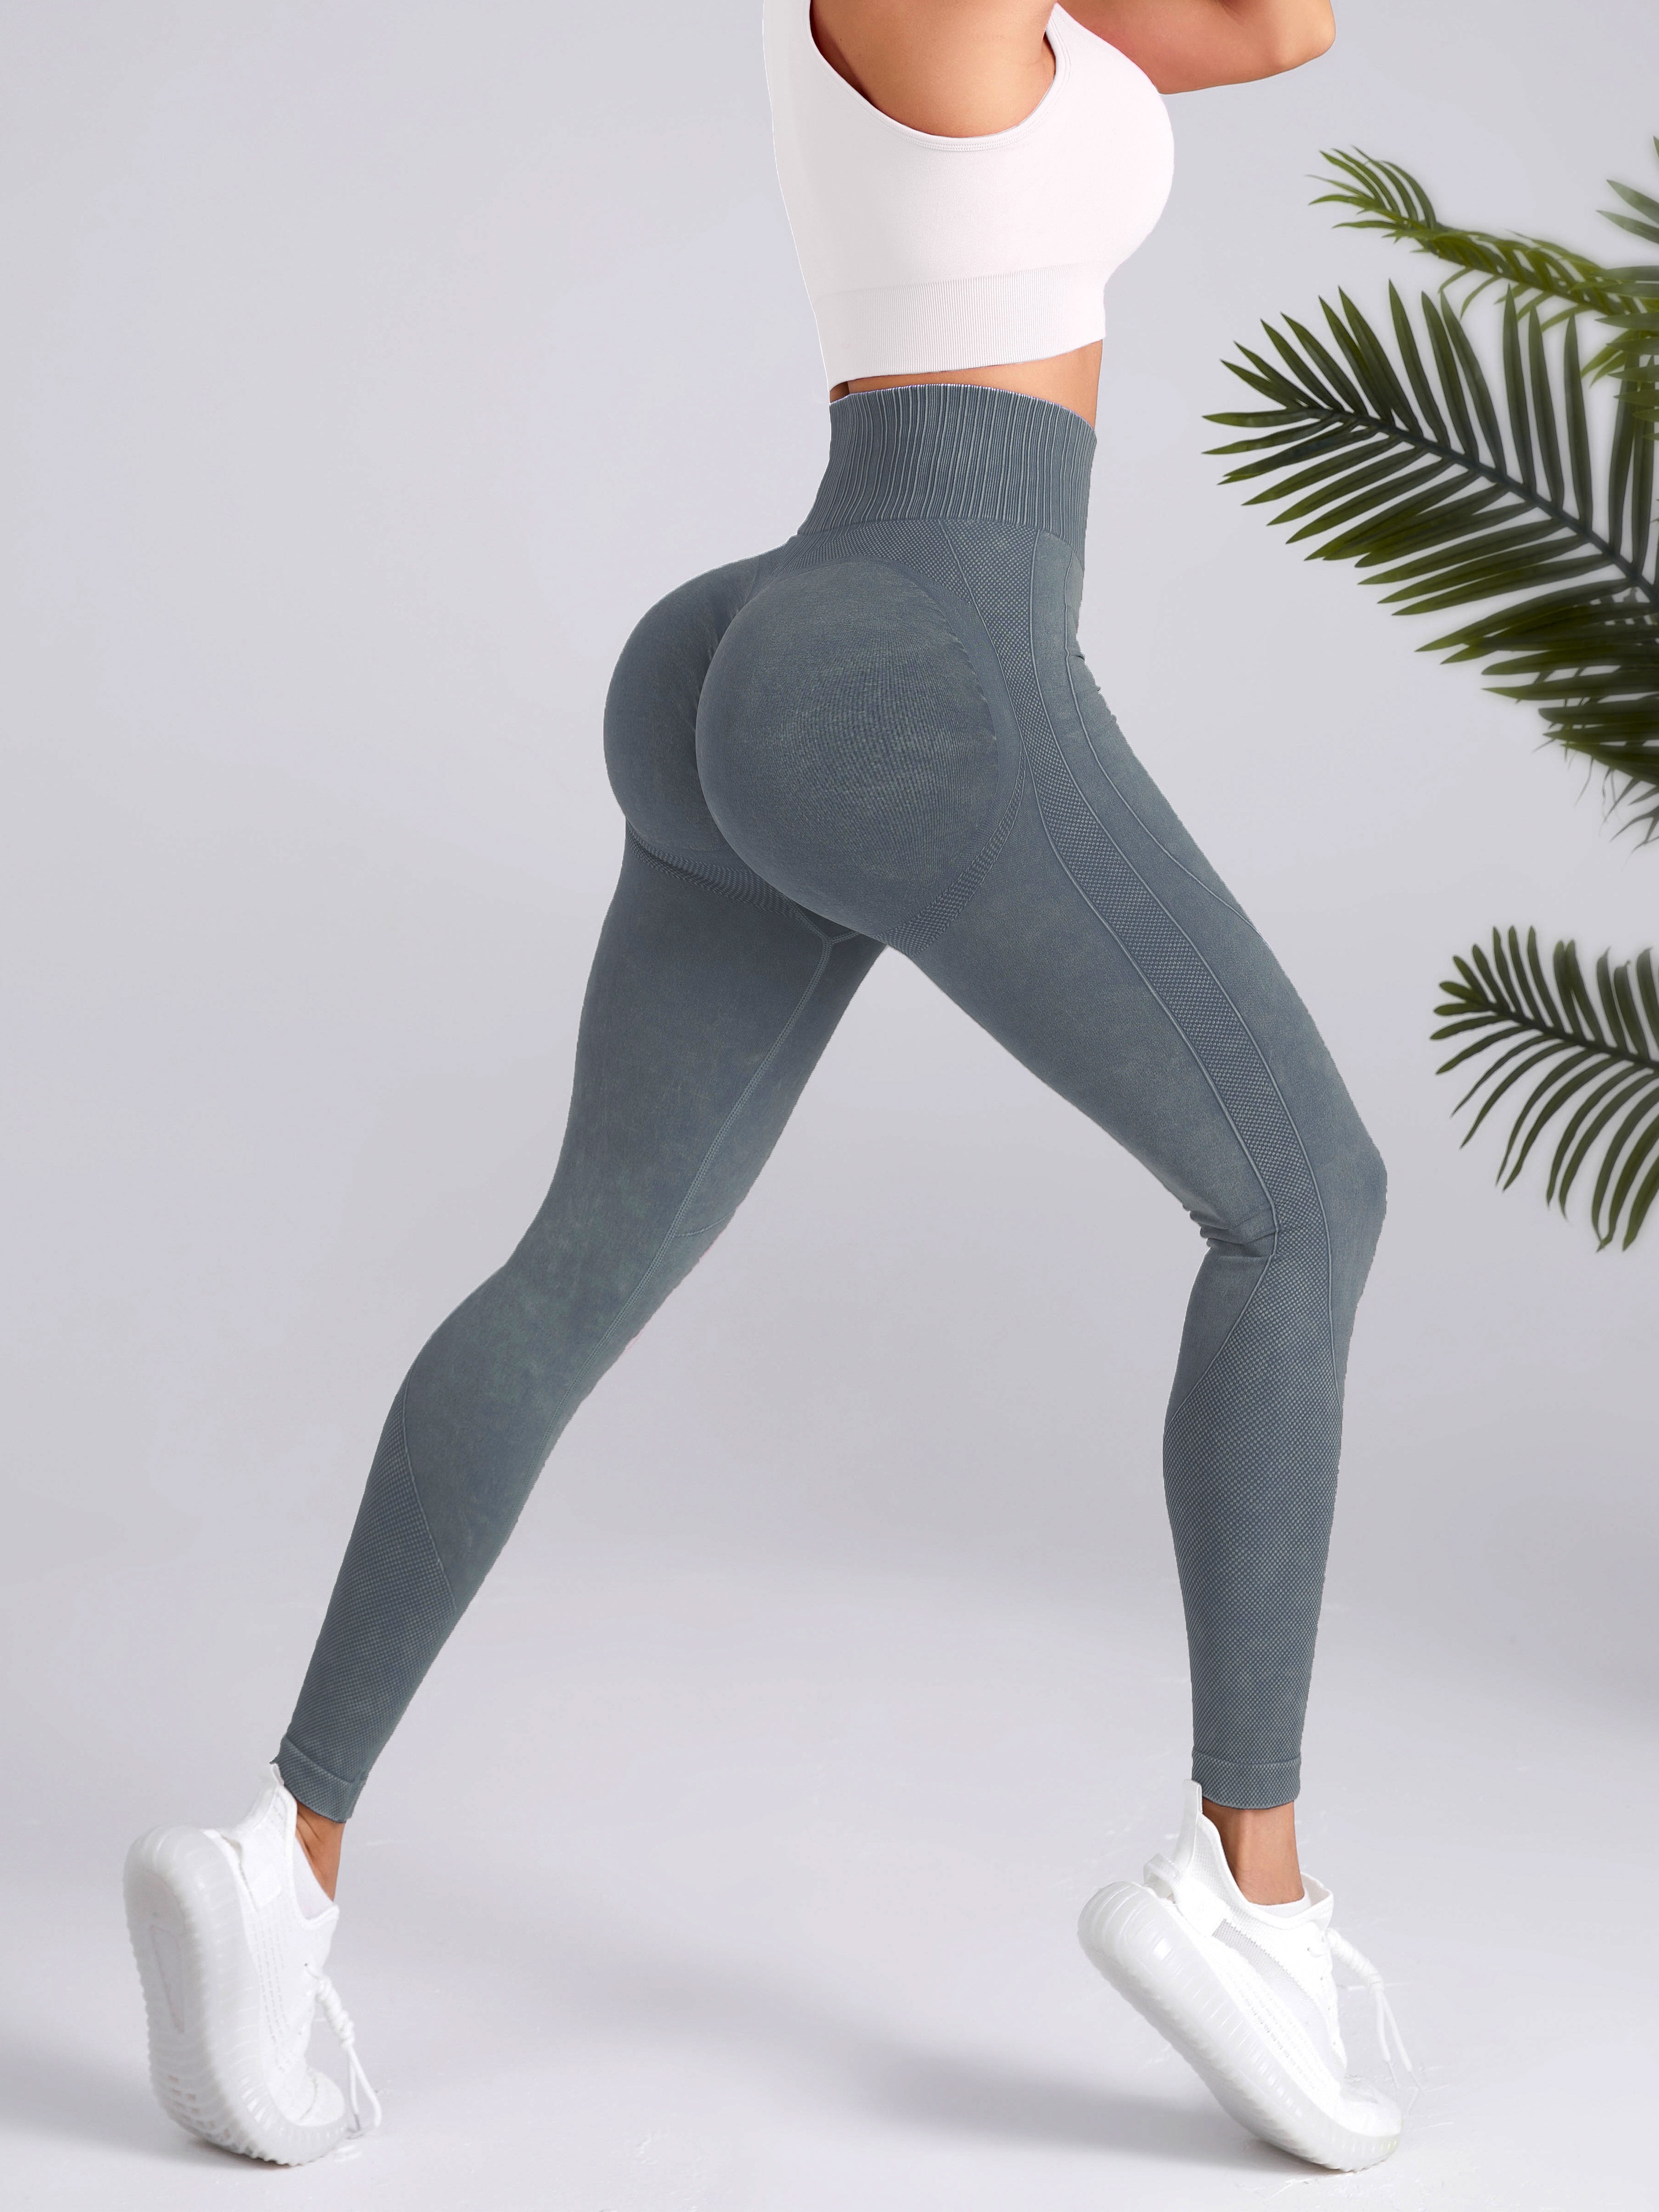 Contour Scrunch Butt Leggings for Women Fitness Yoga Leging